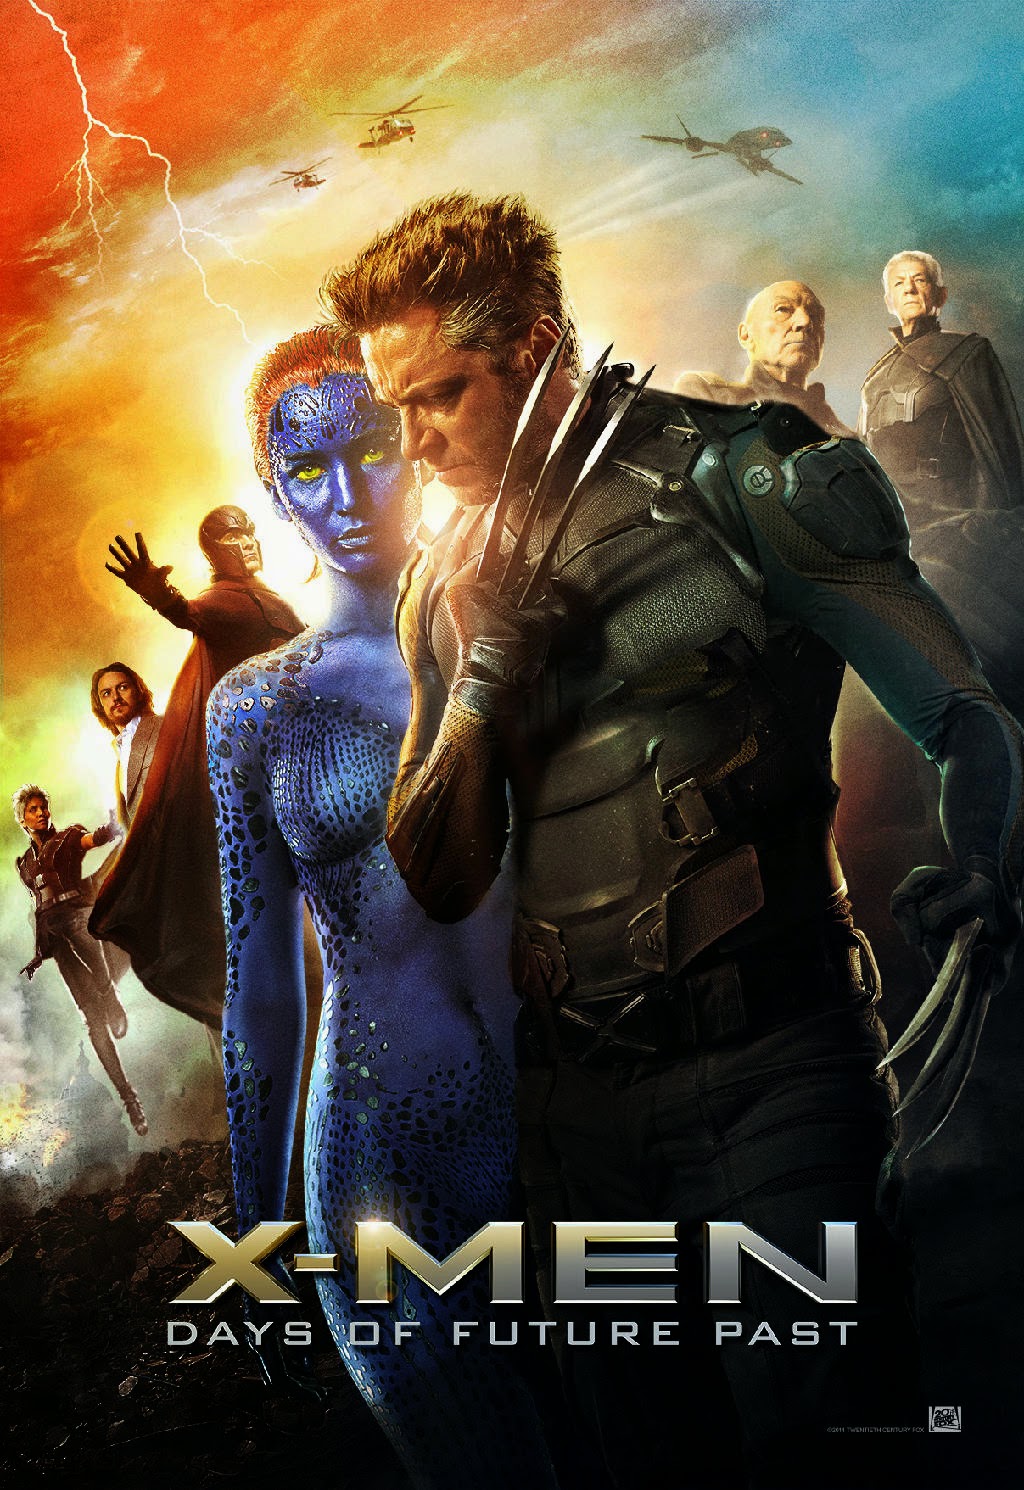 X-Men Days of Future Past (2014) WEB-DL 720p Full Movie + Subtitle Indonesia